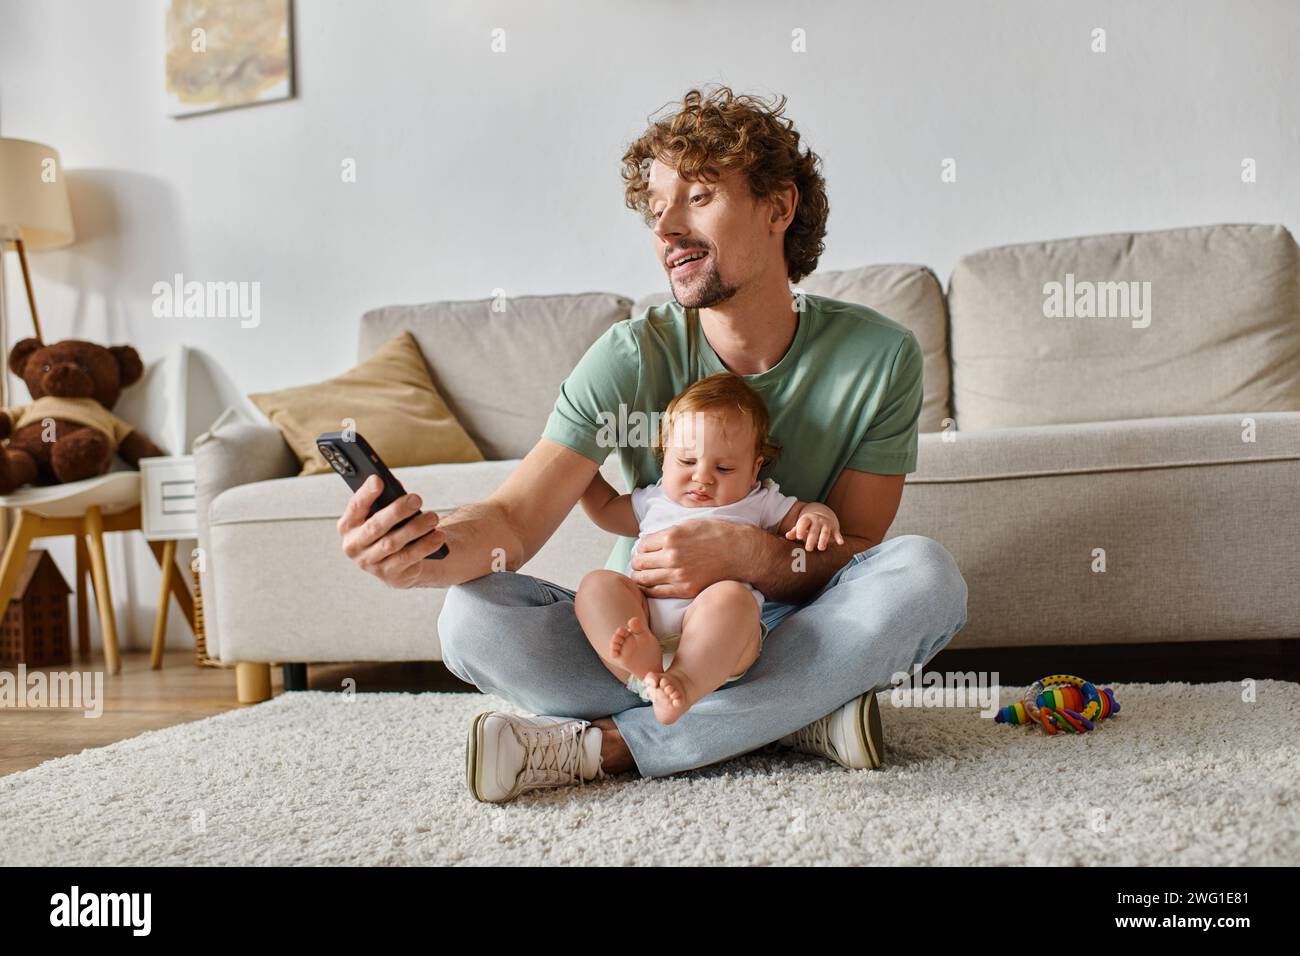 Glücklicher alleinerziehender Vater mit Smartphone, während er mit dem Kleinkind auf dem Teppich in der Nähe von Rassel sitzt Stockfoto